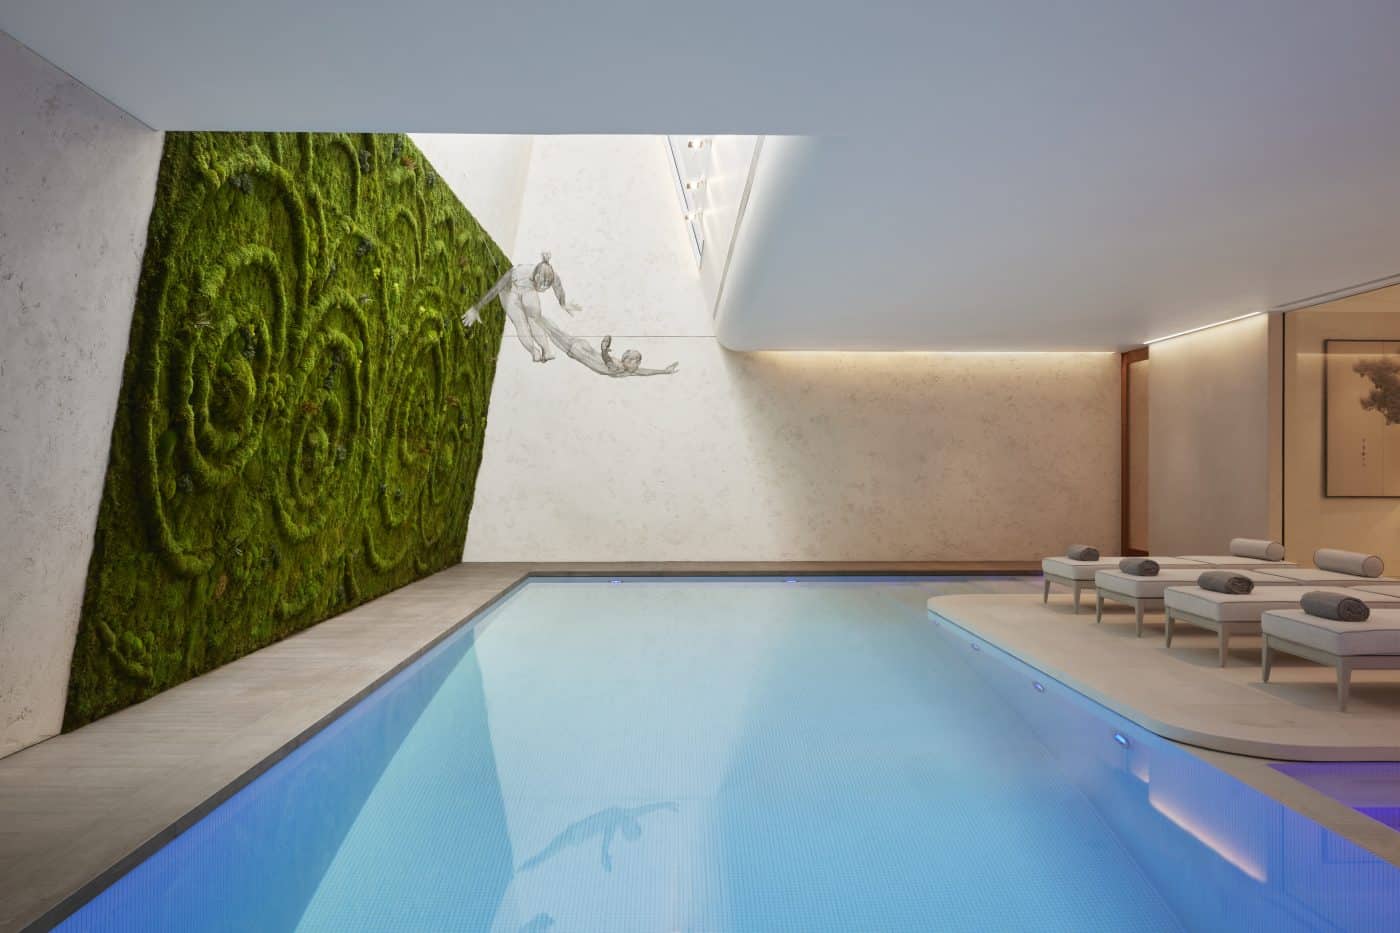 Indoor-Pool mit grüner Wand und Hängeskulpturen, gestaltet von Katharine Pooley